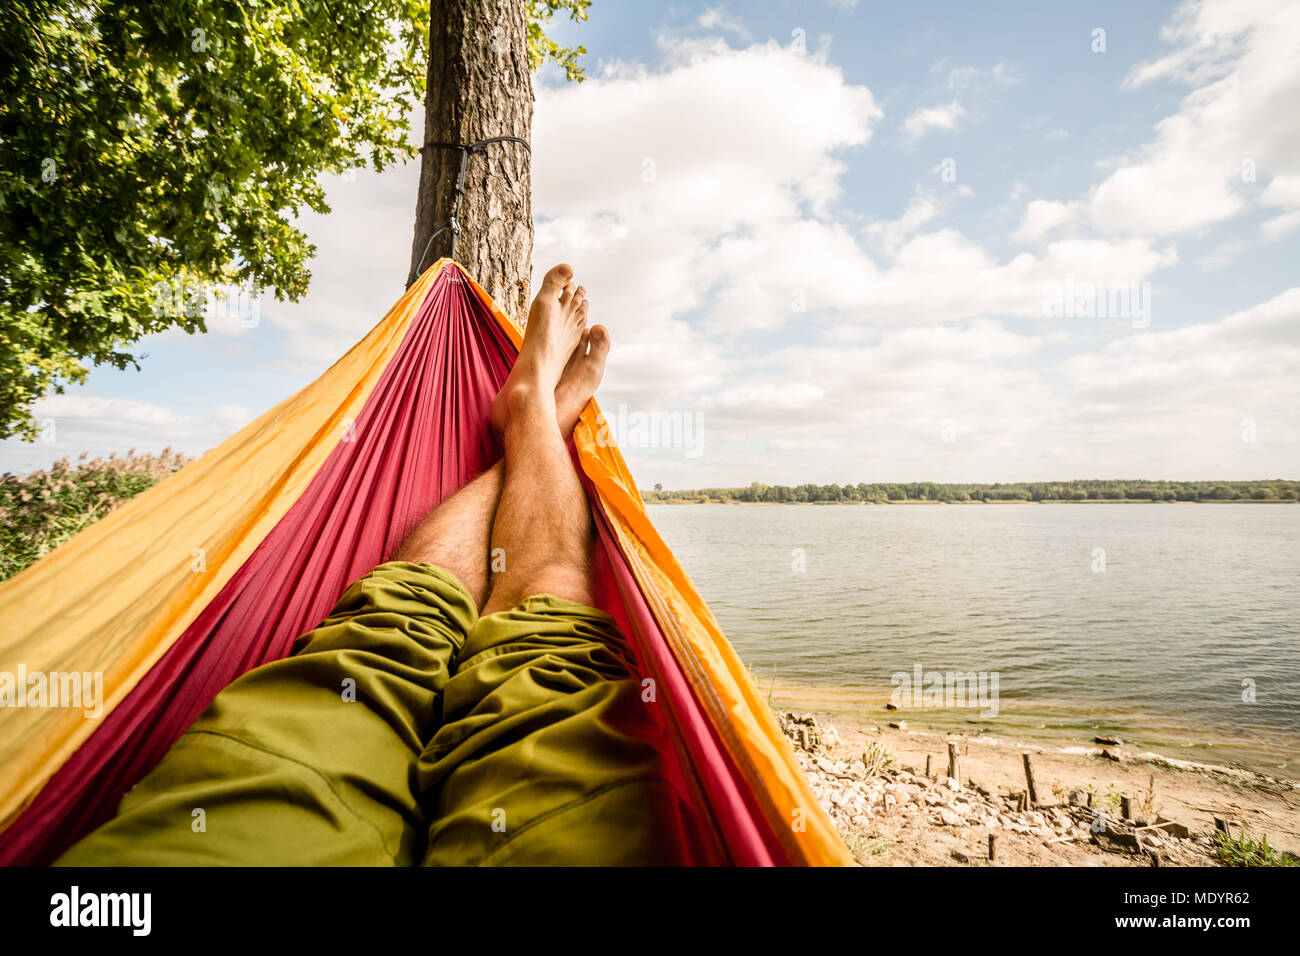 Relaxen in der Hängematte am Strand unter einem Baum, Sommer Tag. Barfuß  Mann in der Hängematte, auf der Suche nach einem See, inspirierende  Landschaft Stockfotografie - Alamy